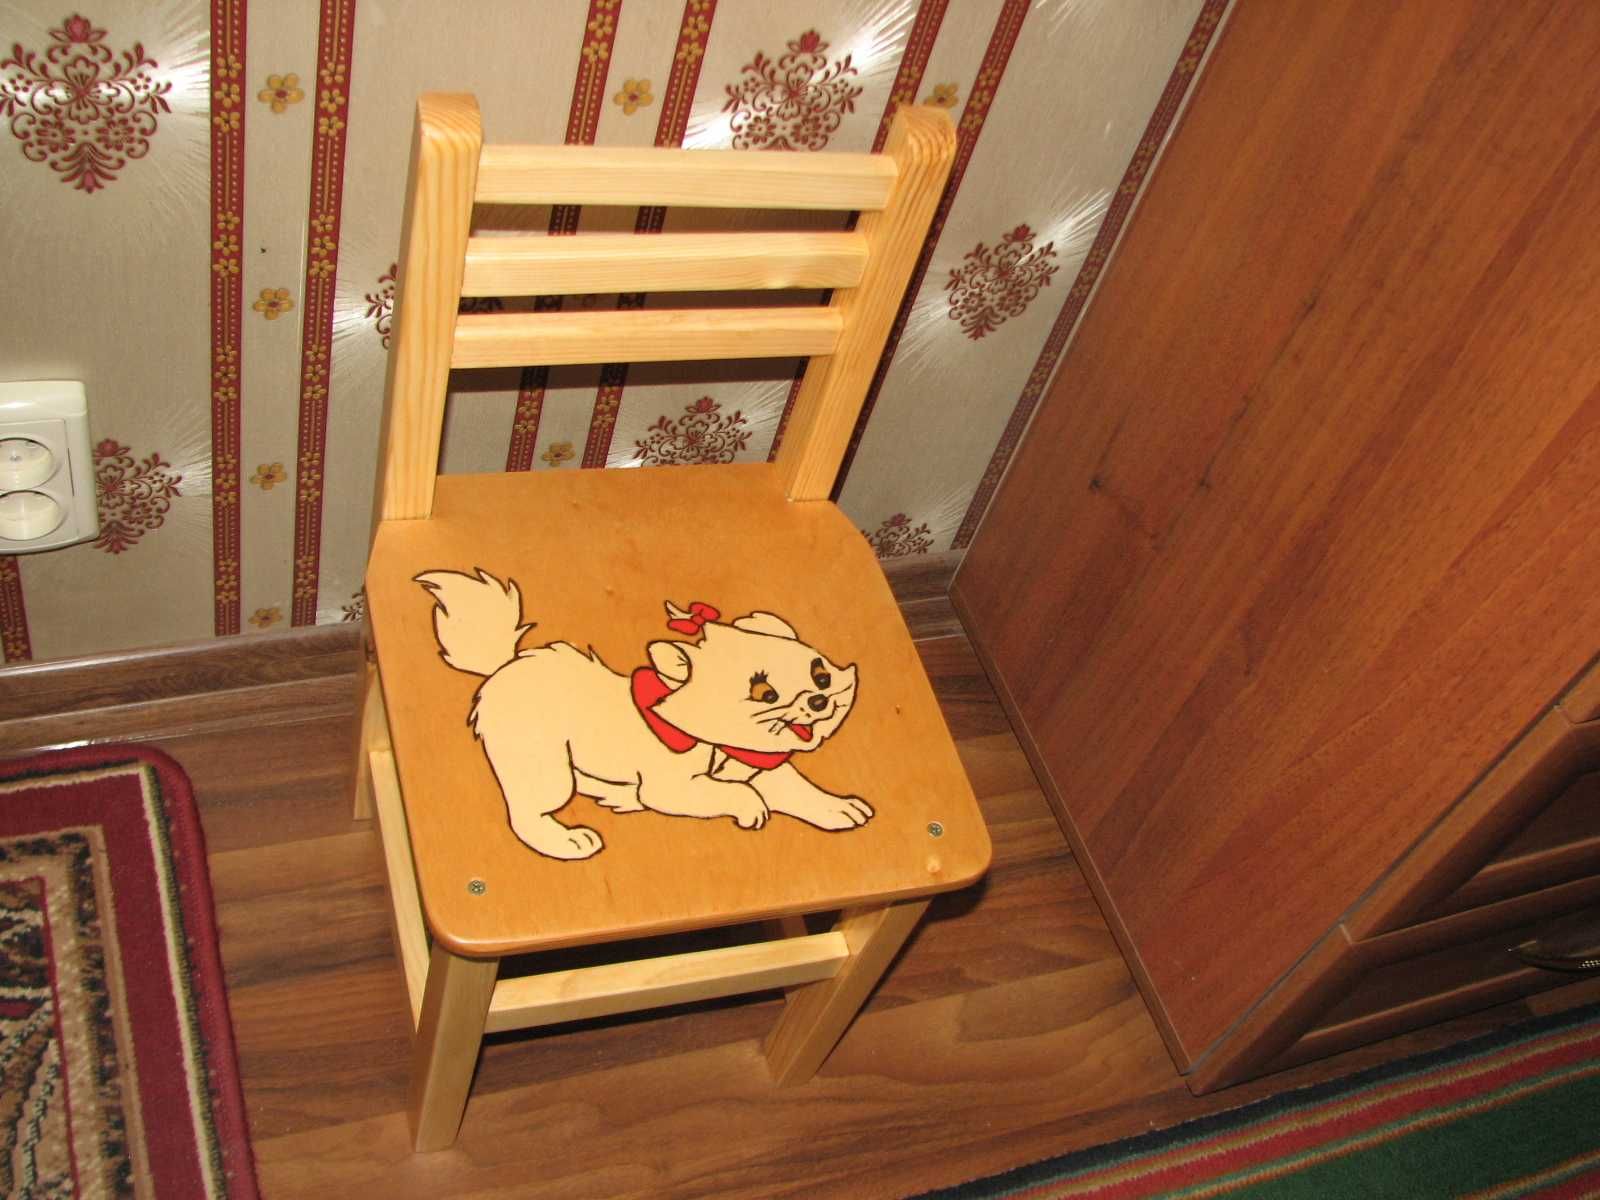 стул, стульчик детский.